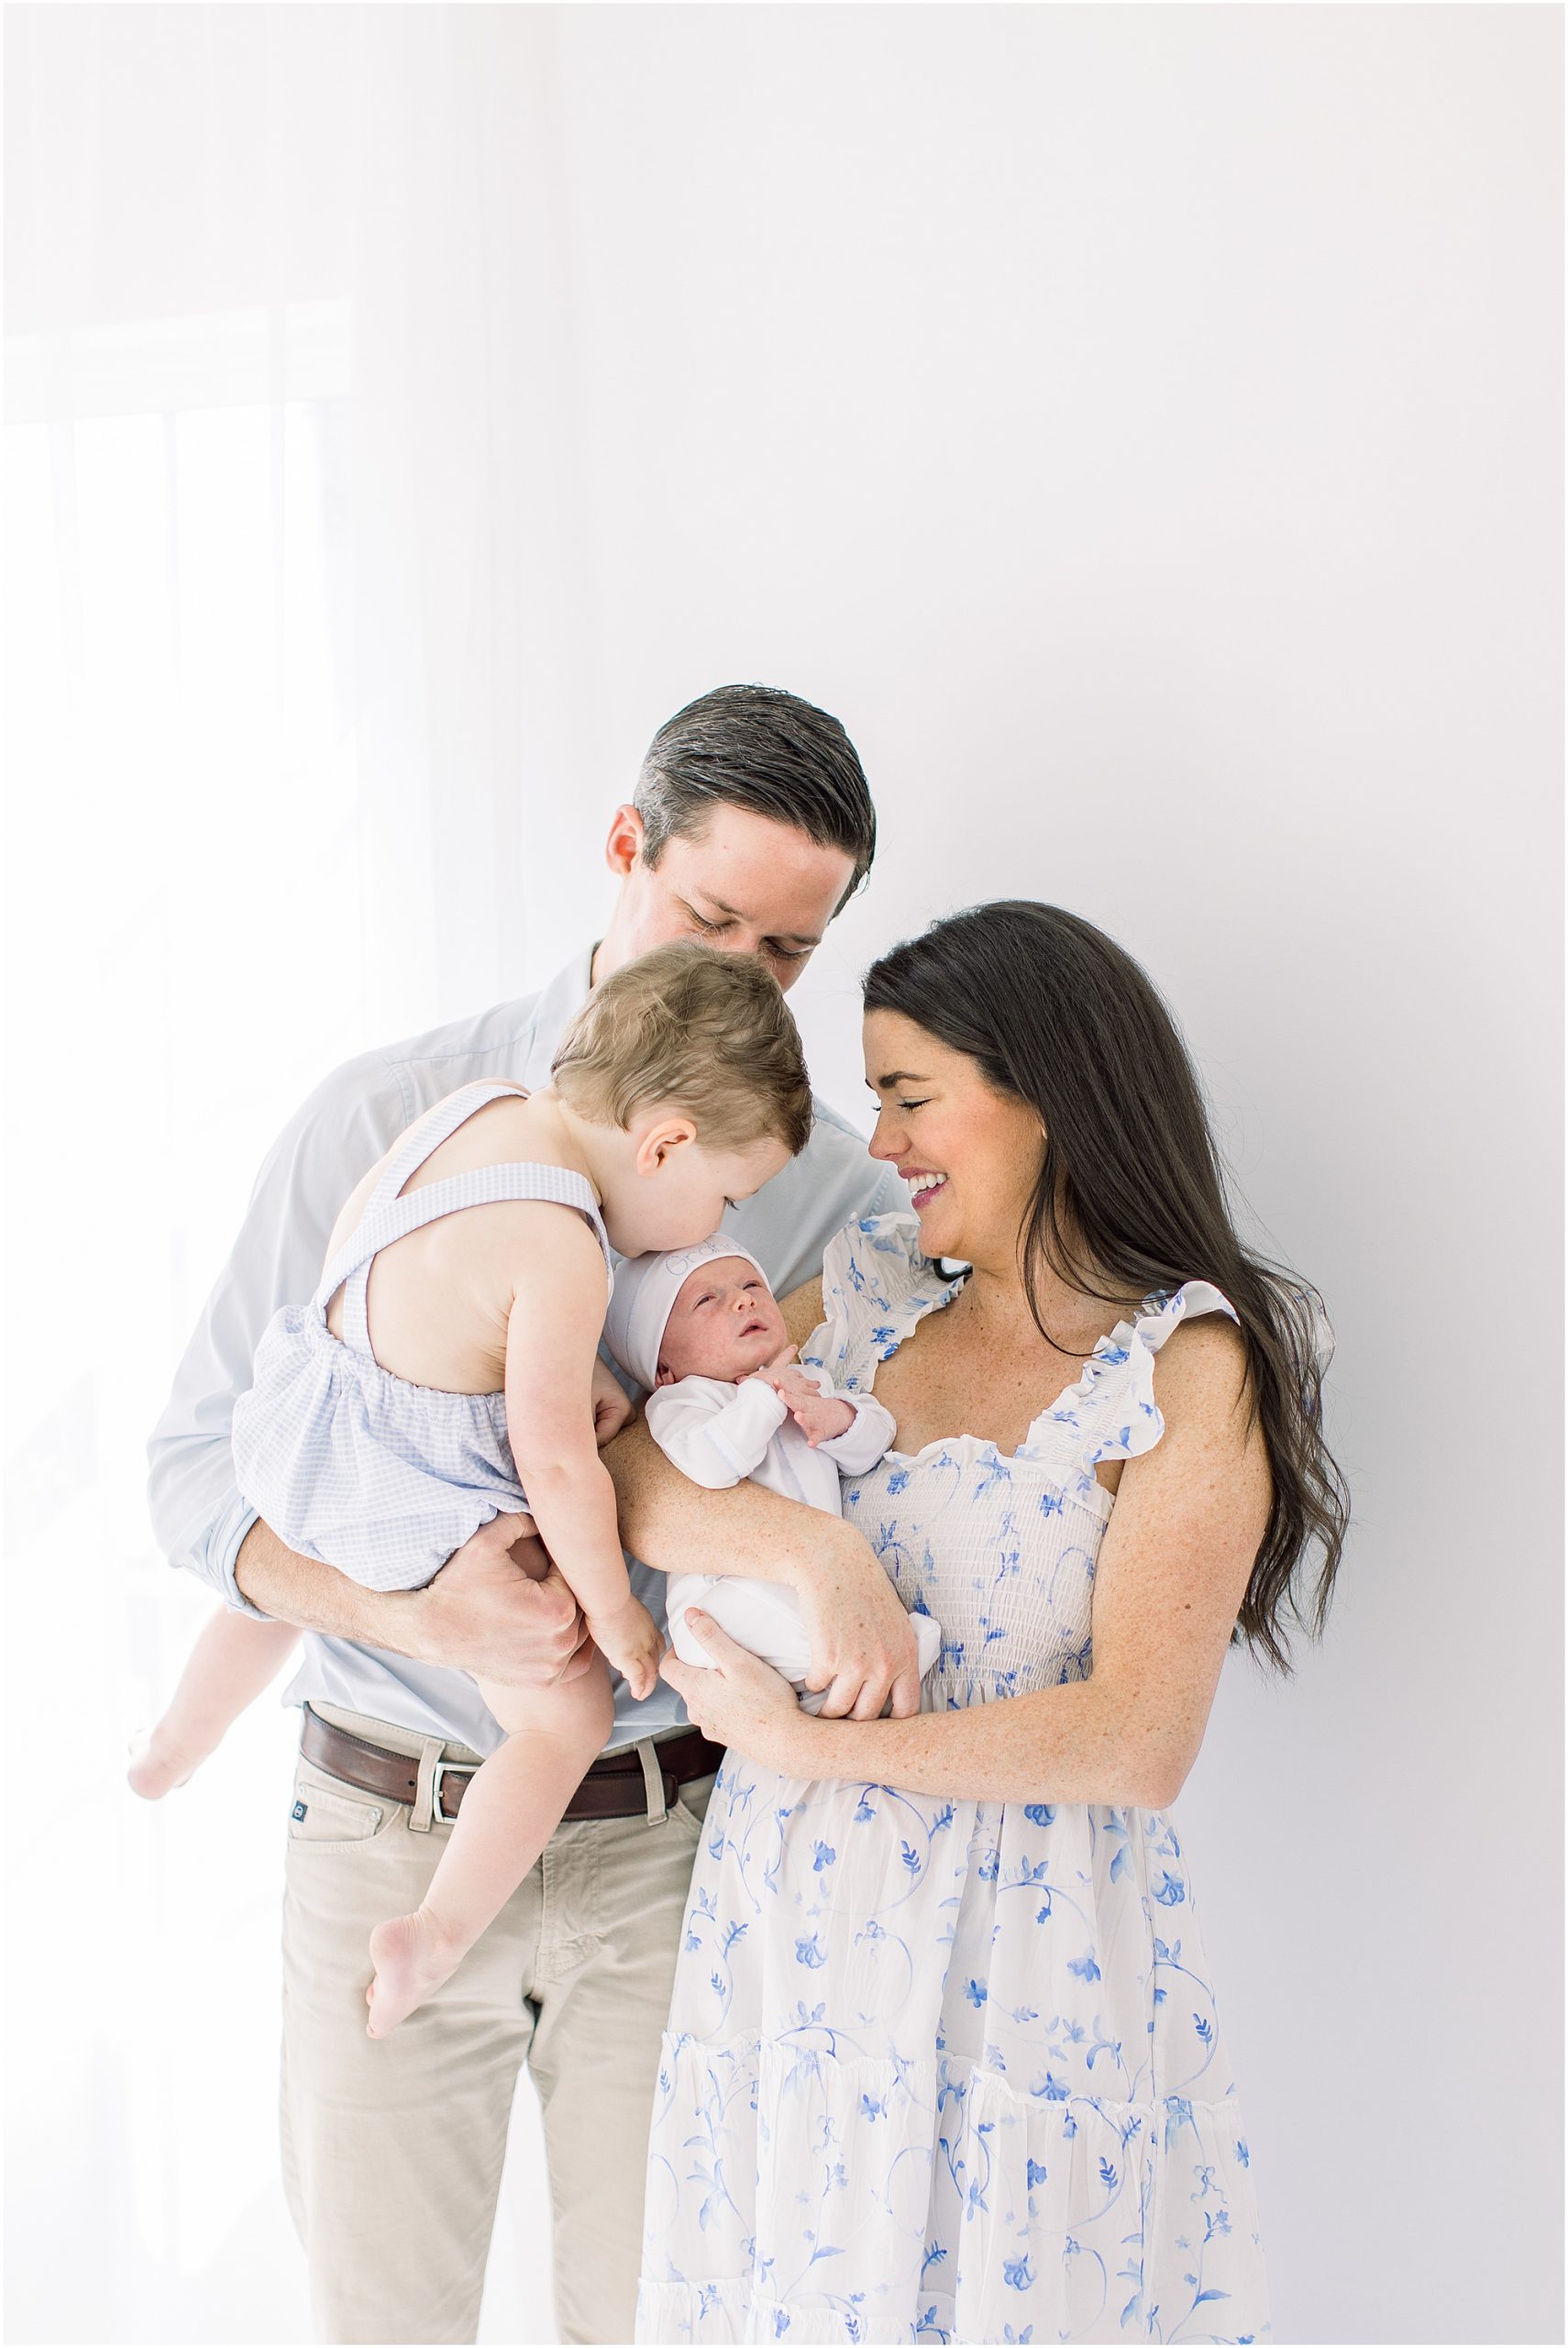 Family and newborn photo in Oklahoma City.